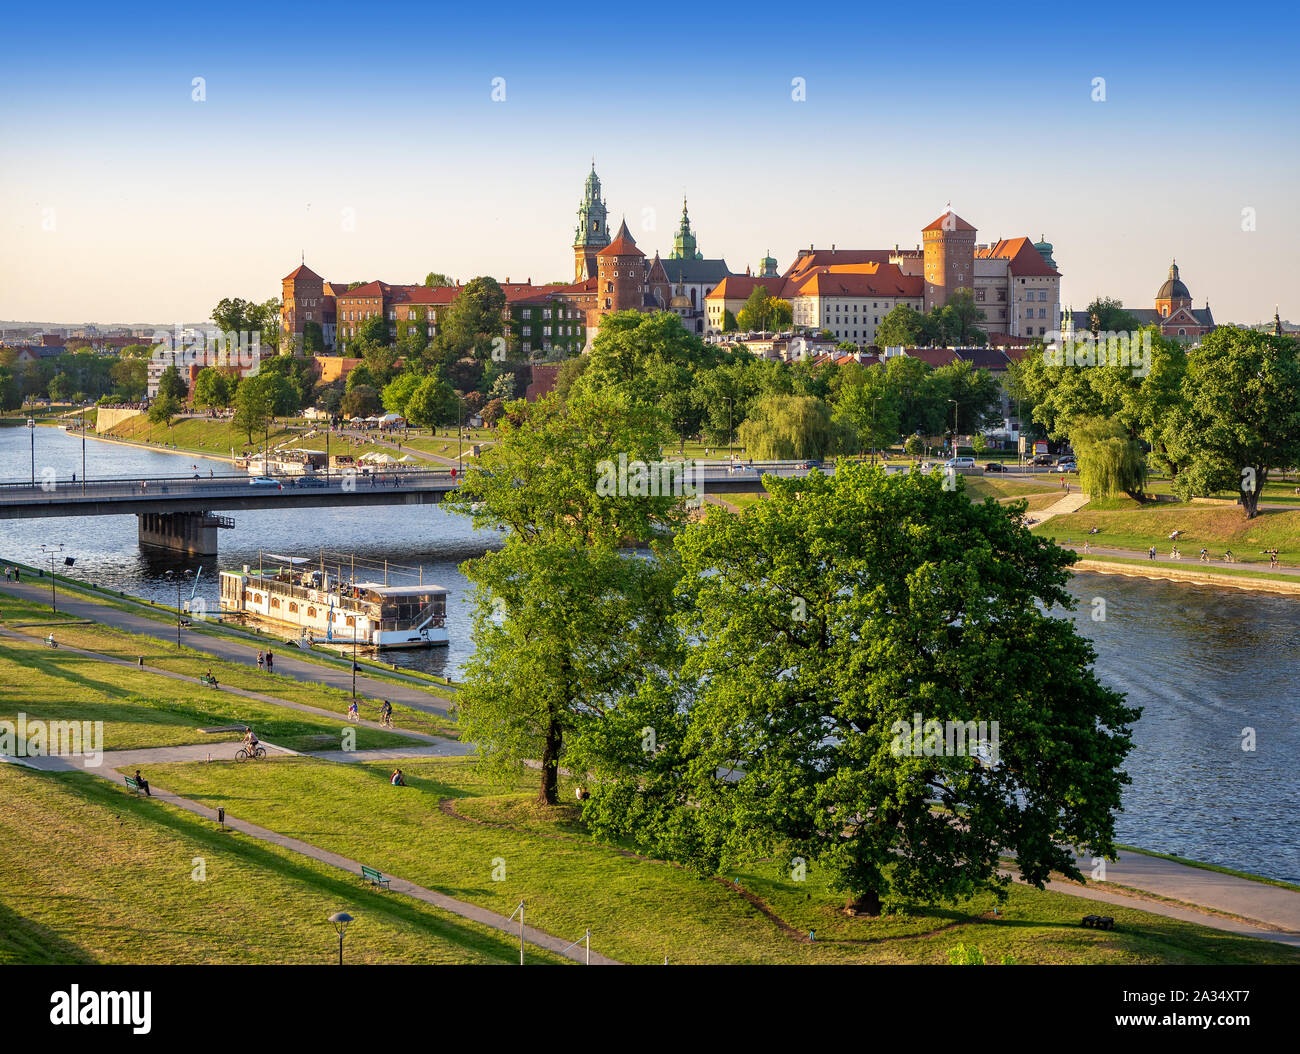 Krakau, Polen, mit Schloss und Kathedrale auf dem Wawel, Weichsel, podwawelski Brücke, ein Restaurant auf dem Schiff, Bäume und Promenaden im Sommer. Antenne Stockfoto